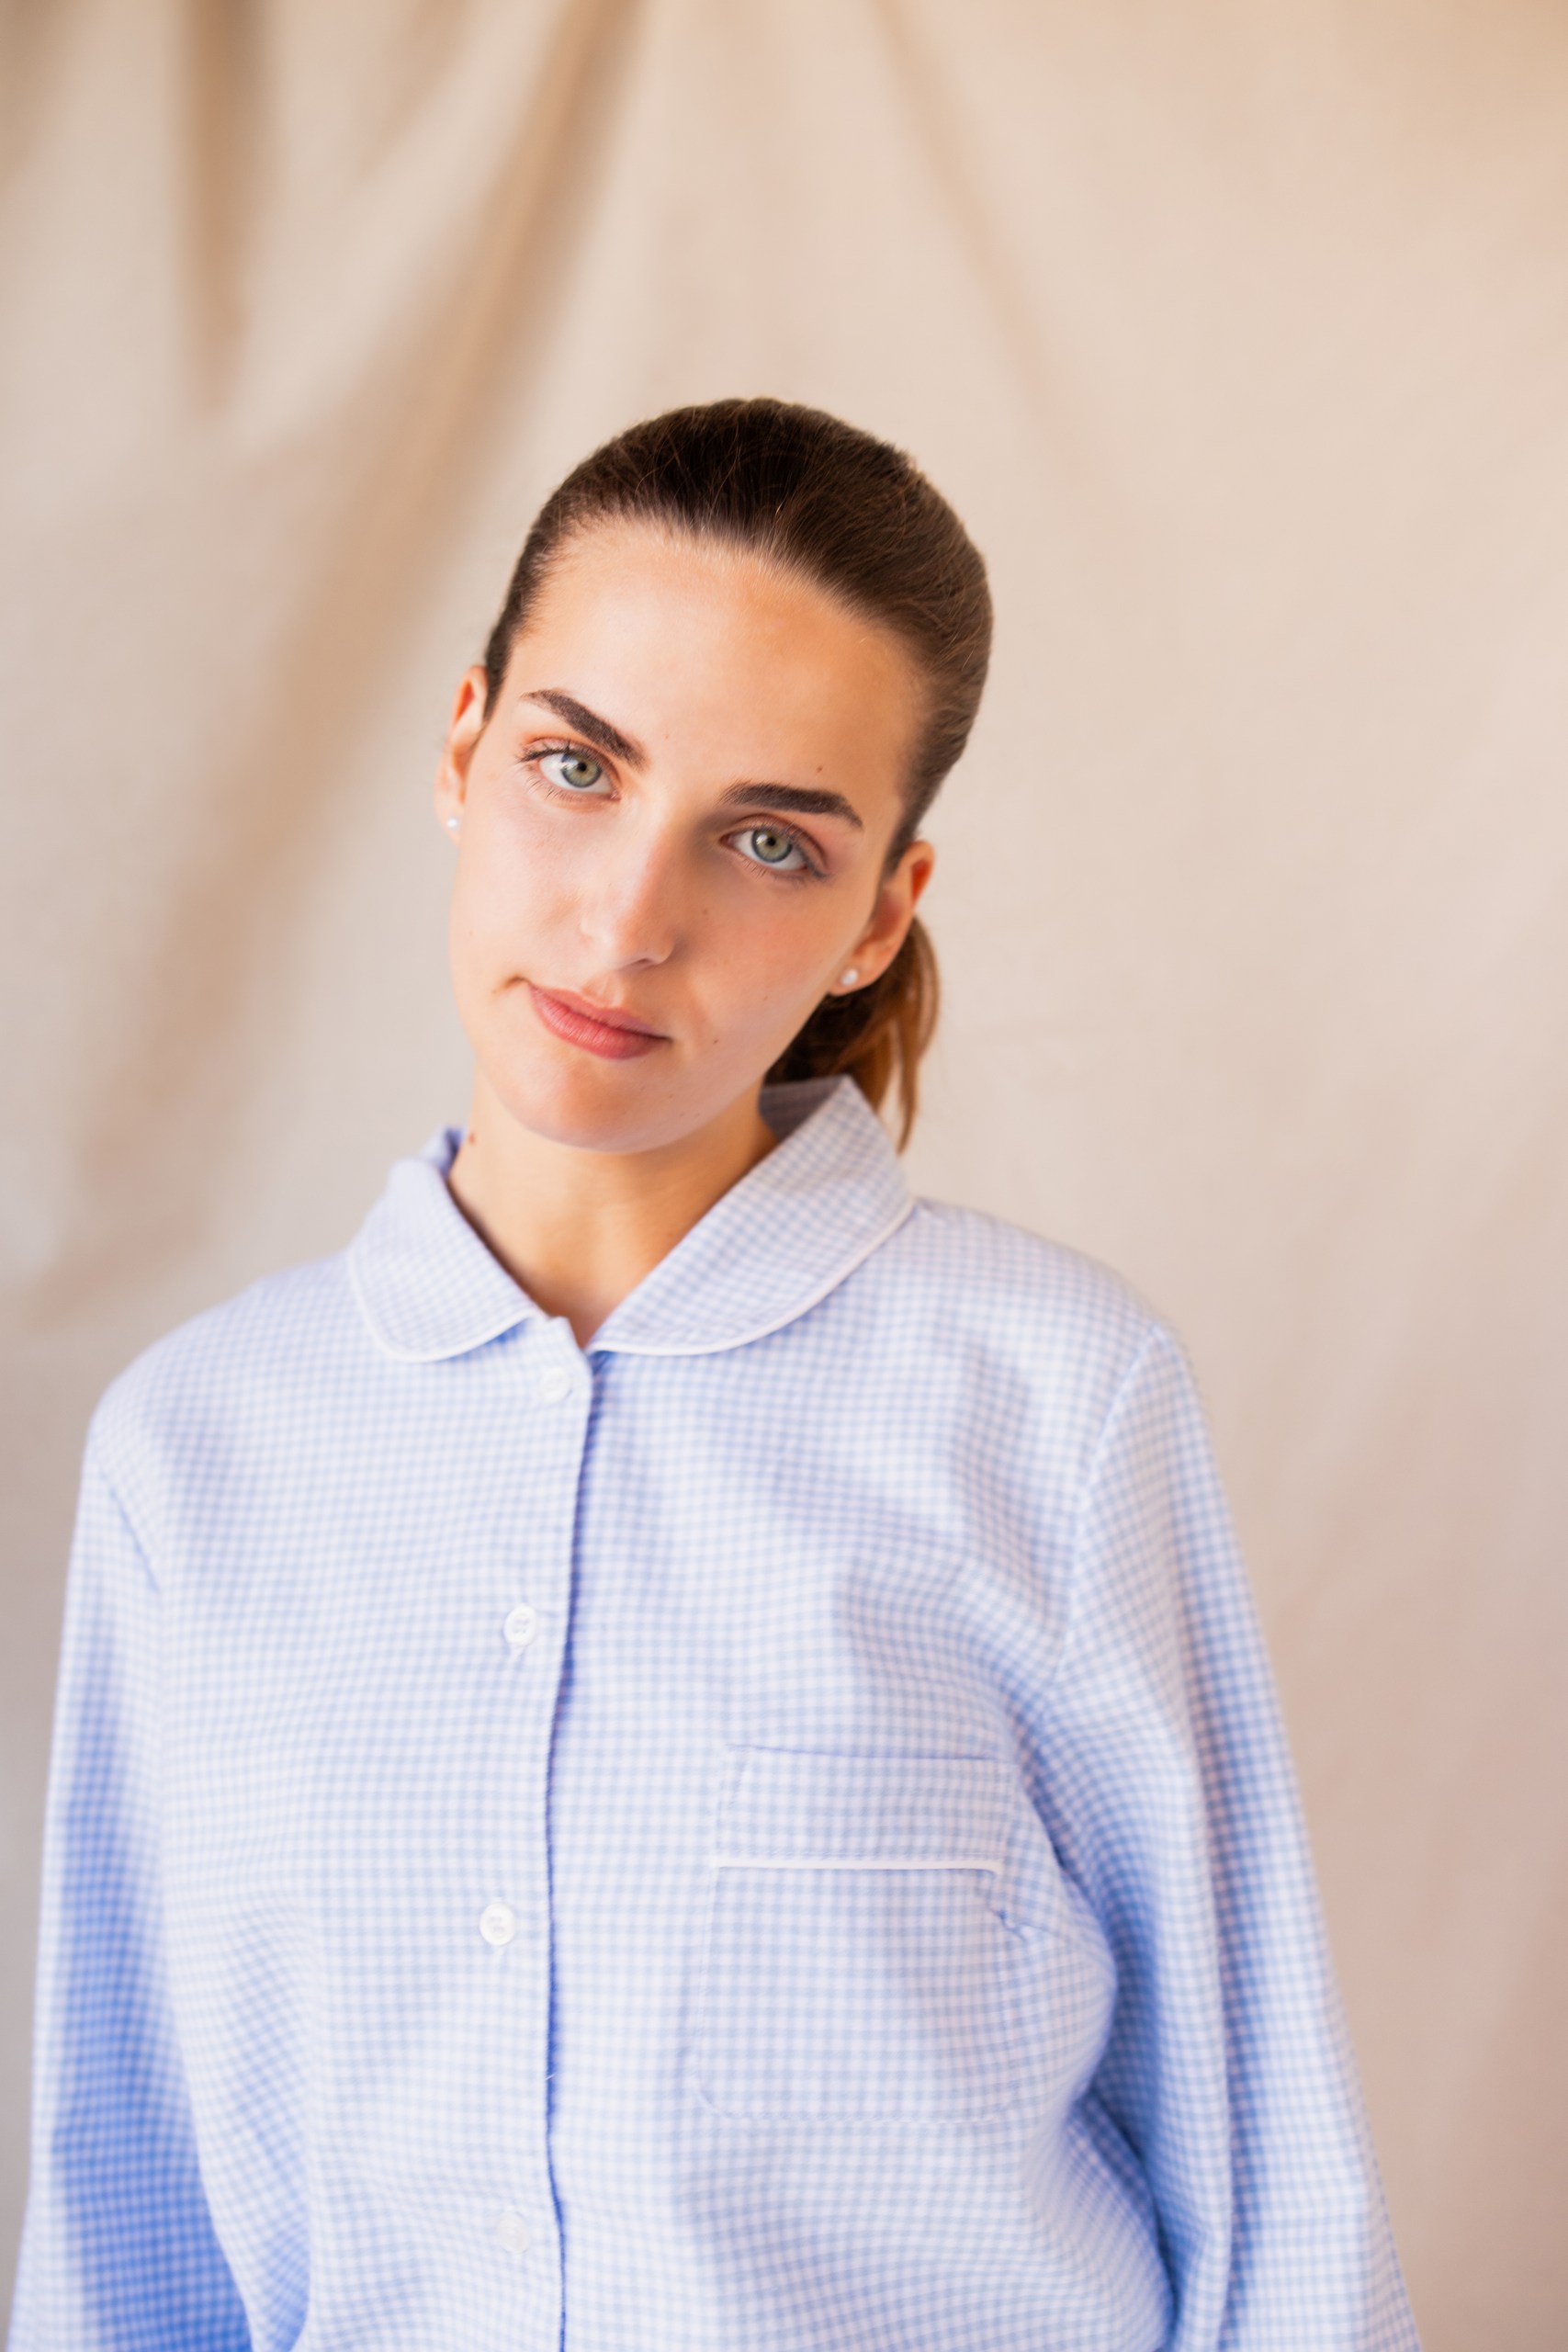 Pyjama long pour femme pilou 100% coton- Fil teint Vichy Bleu hiver